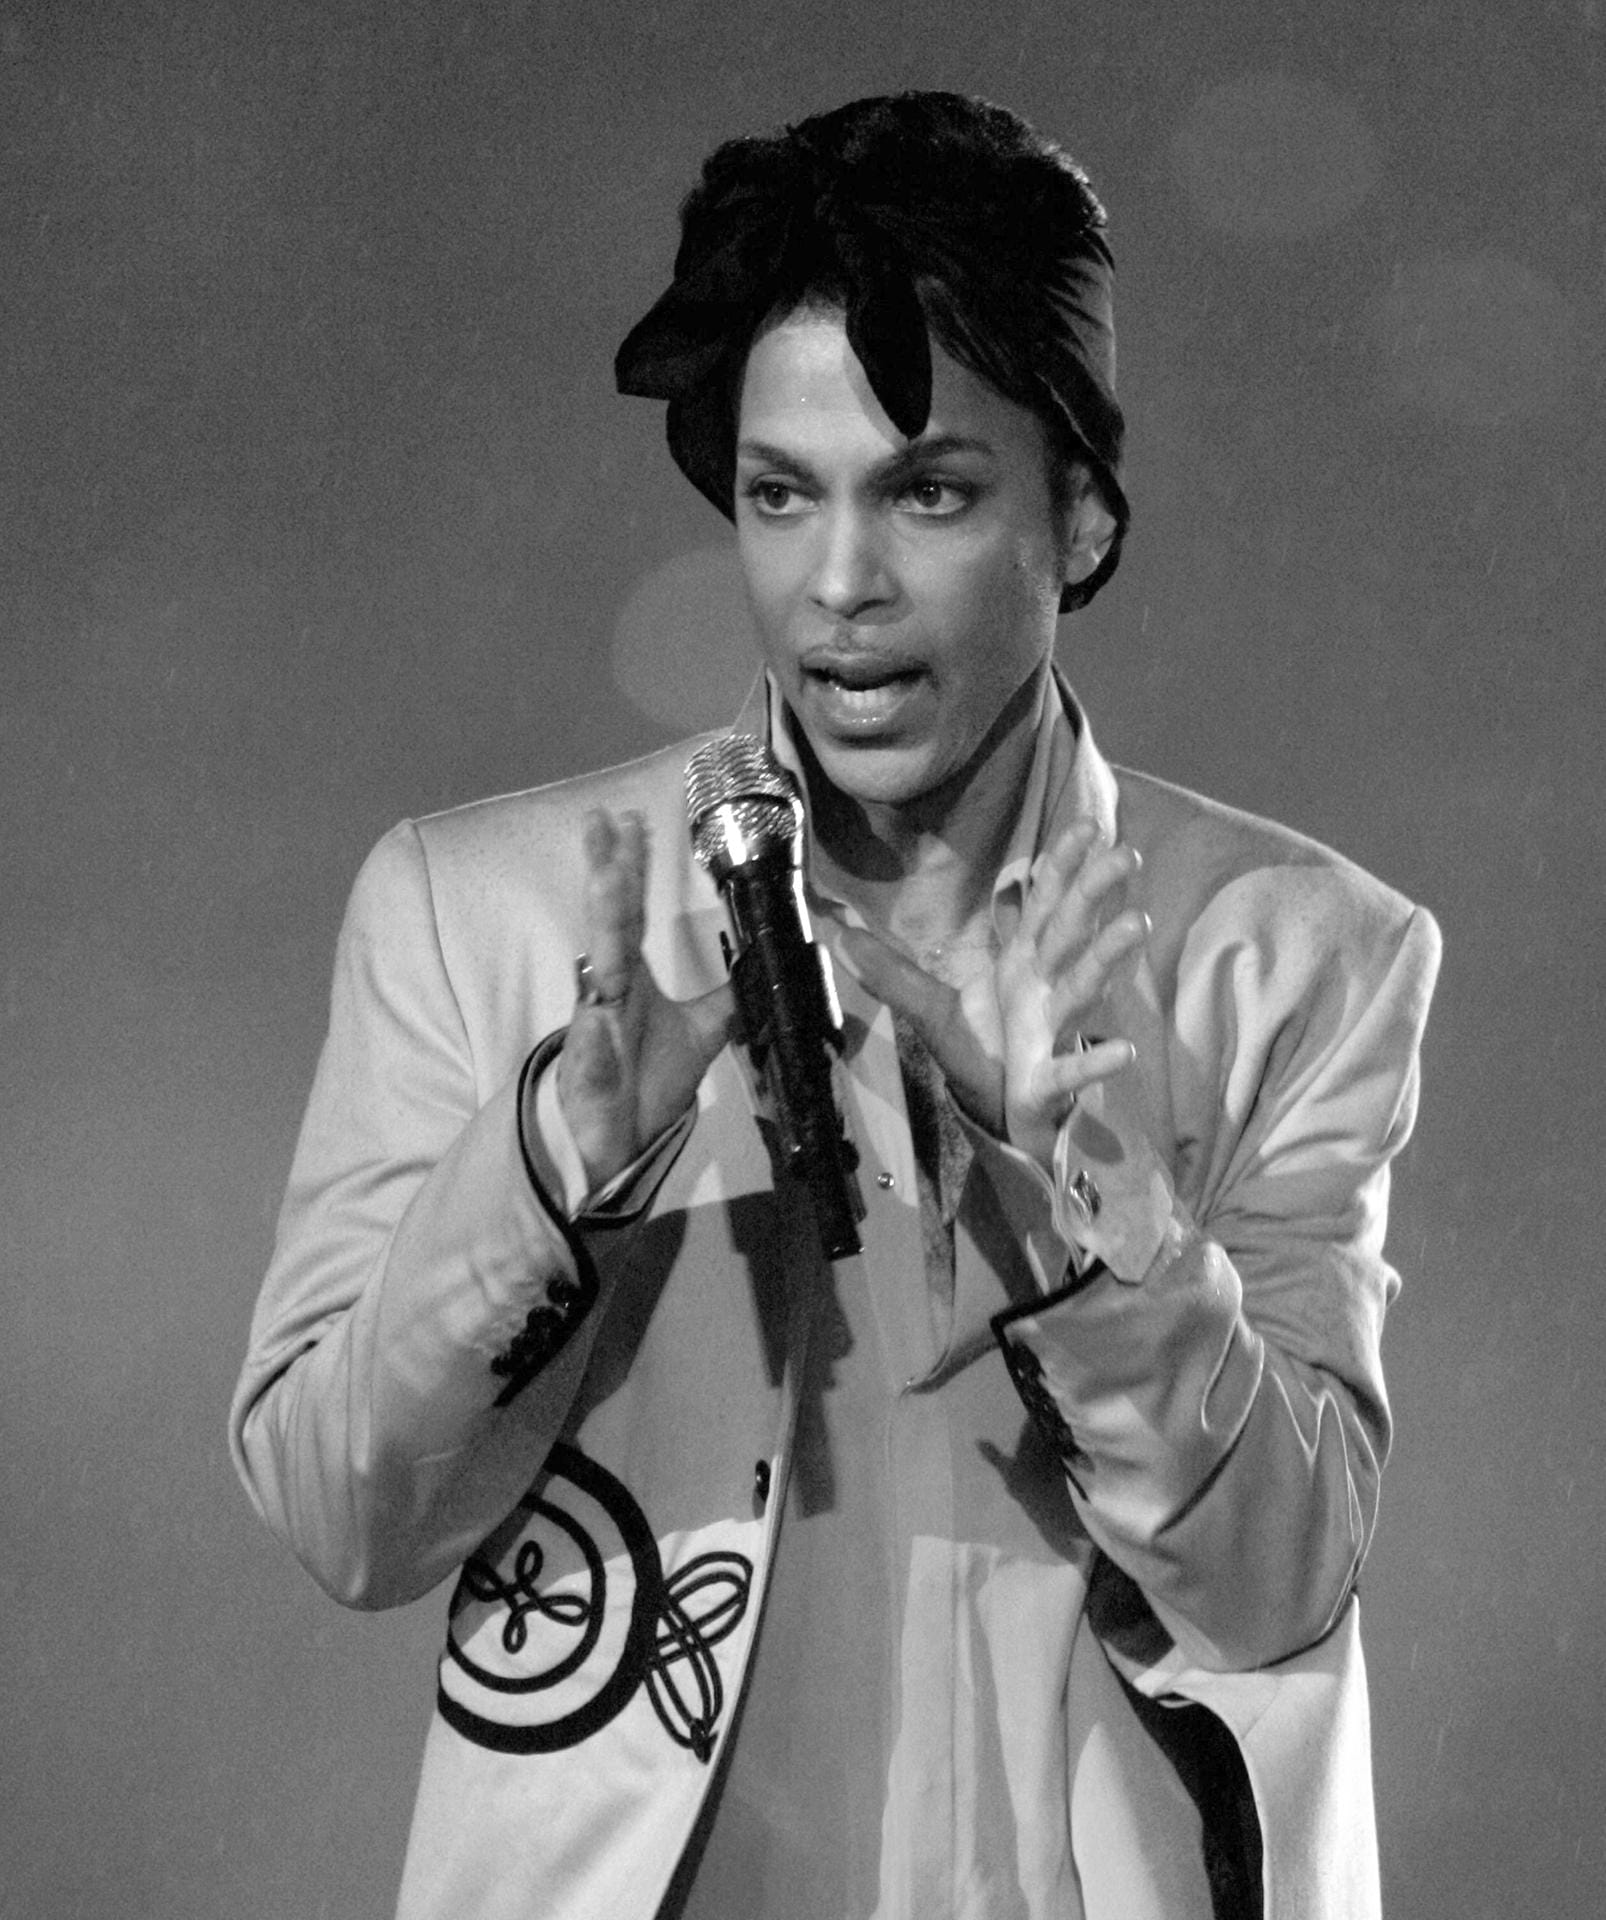 Die Musiklegende Prince ist tot. Der Sänger starb am 21. April 2016 im Alter von 57 Jahren.